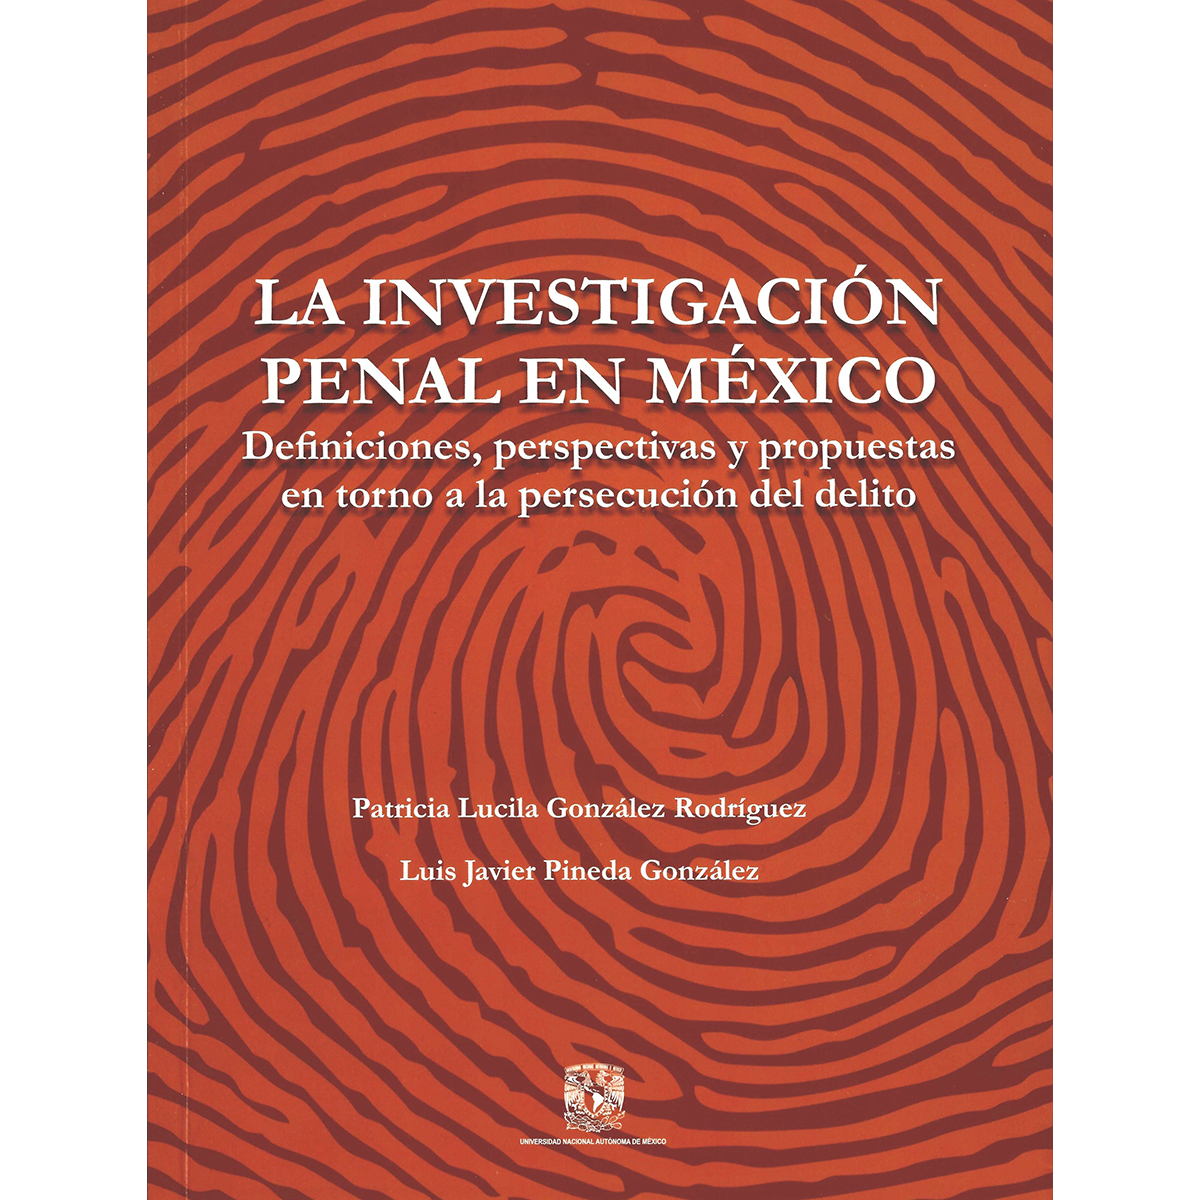 LA INVESTIGACIÓN PENAL EN MÉXICO: DEFINICIONES, PERSPECTIVAS Y PROPUESTAS EN TORNO A LA PERSECUCIÓN DEL DELITO